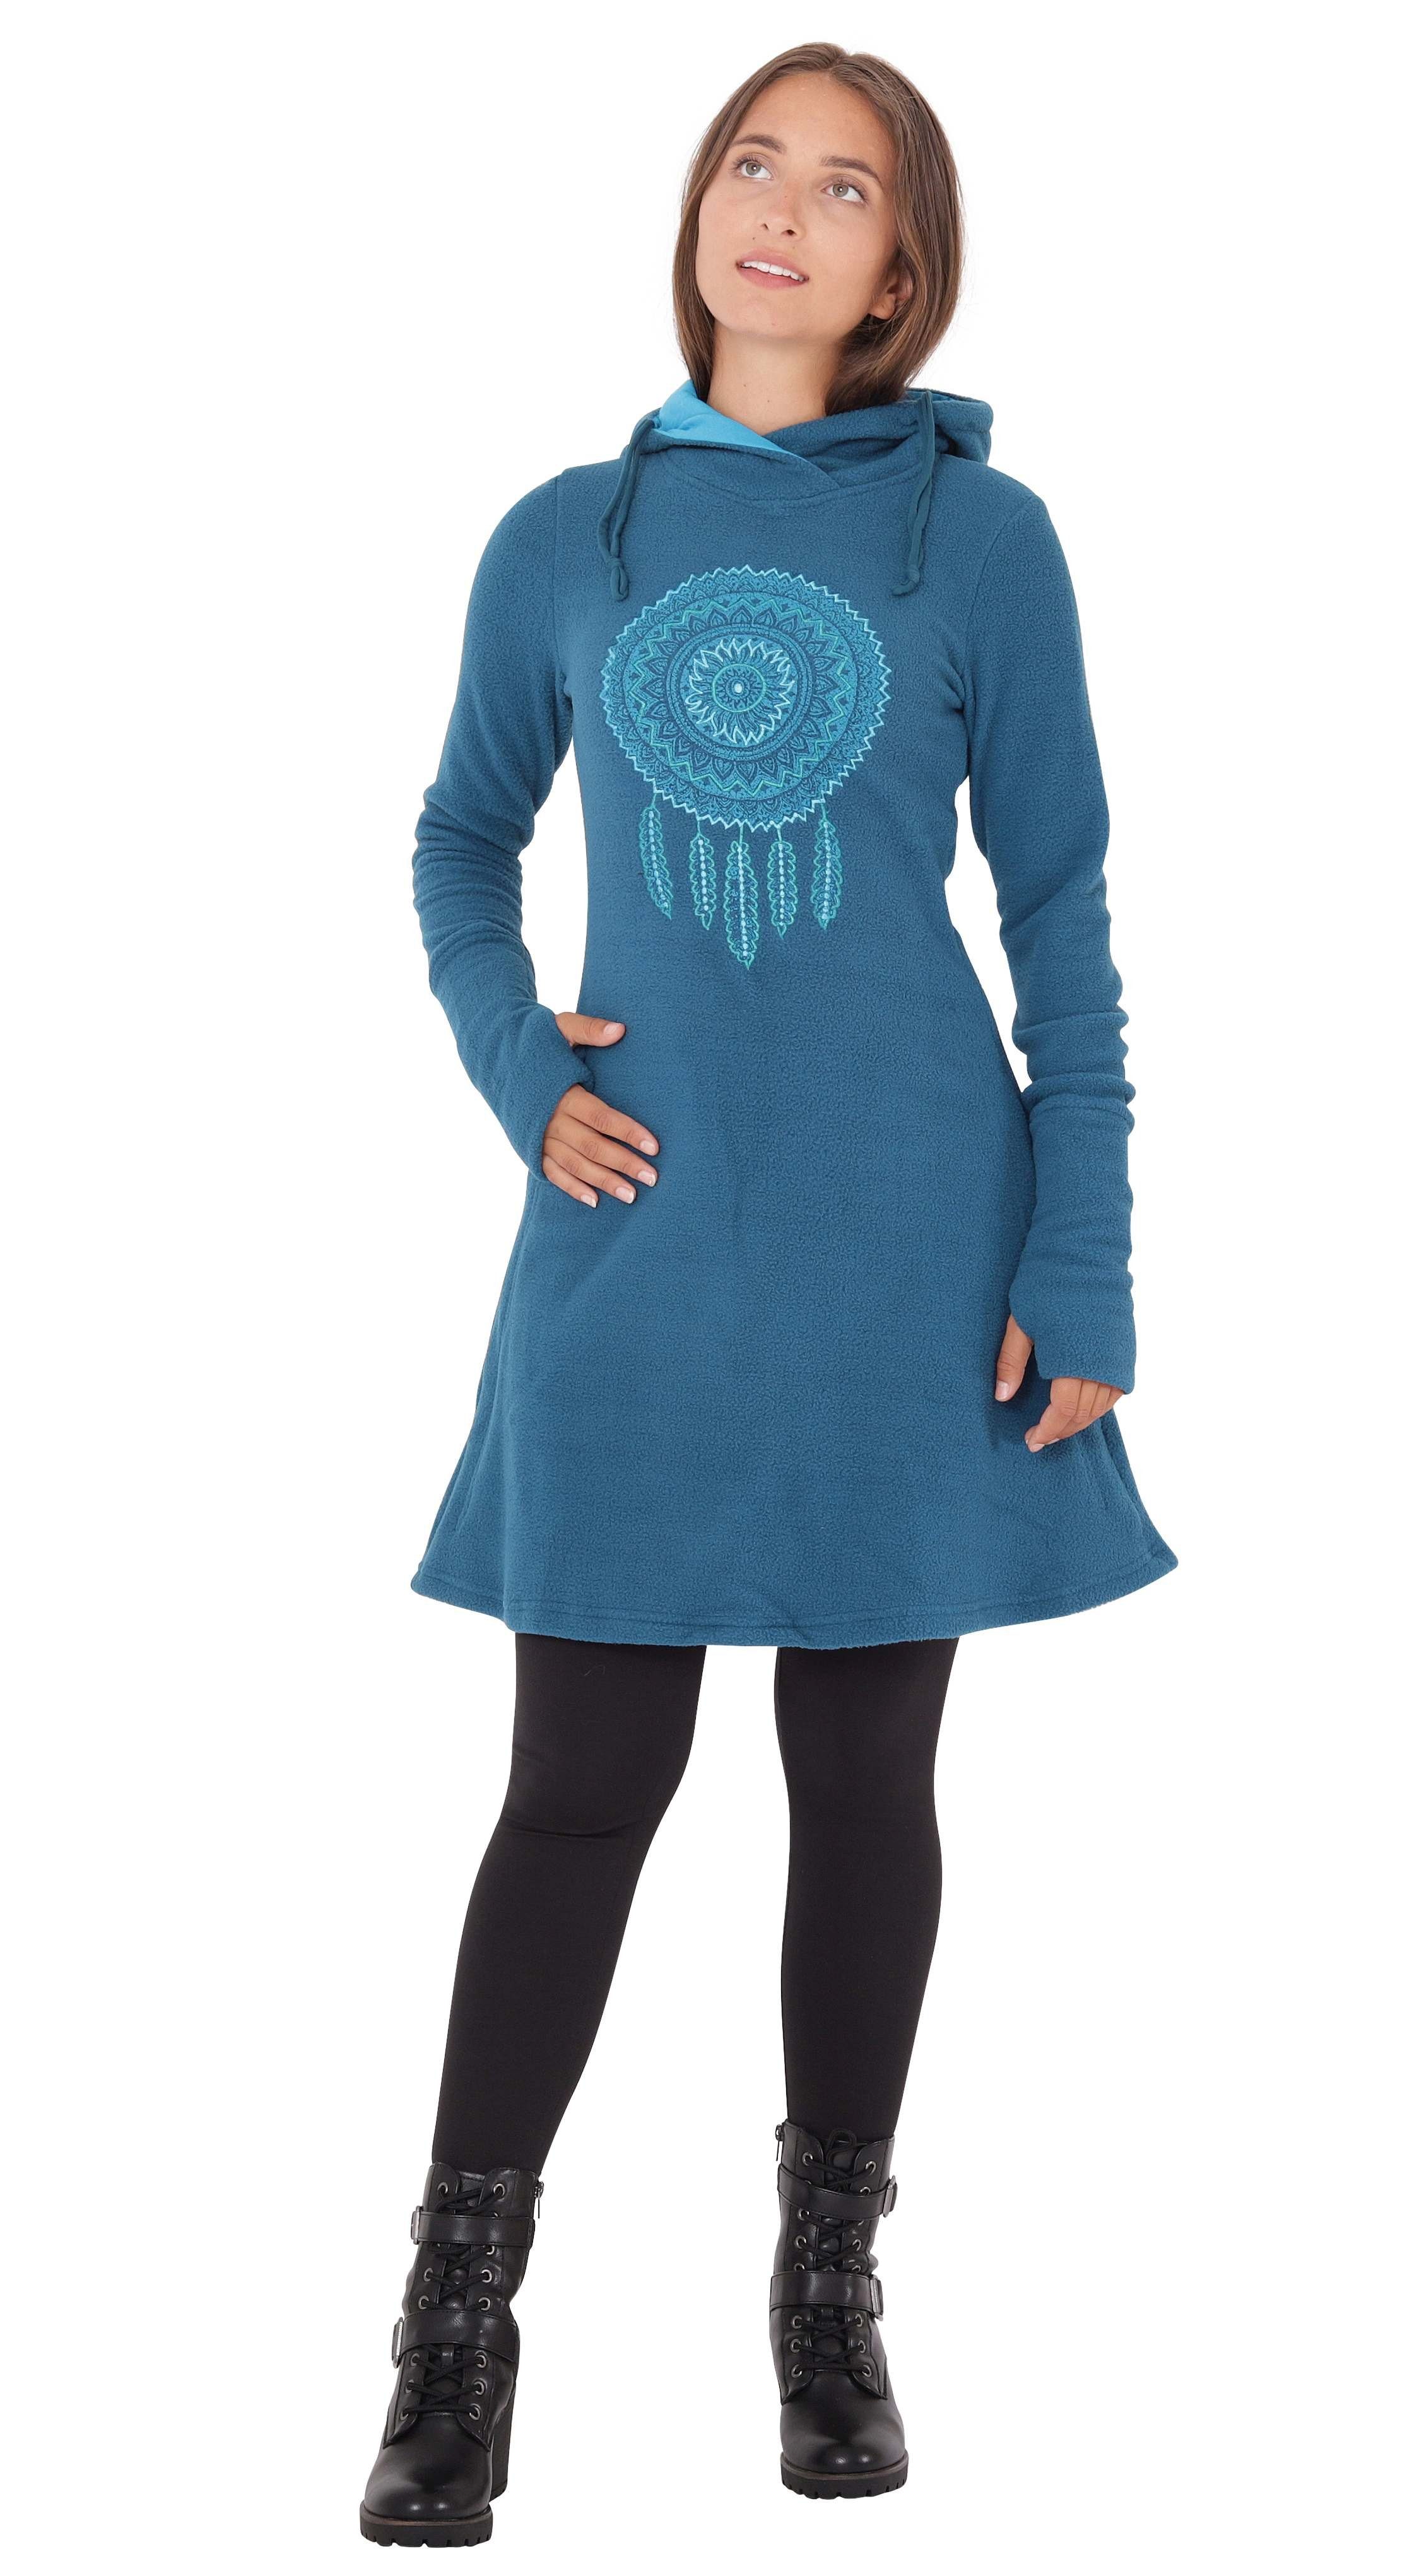 dr31 PUREWONDER Traumfänger Winterkleid Fleece Kapuzenkleid Blau A-Linien-Kleid mit